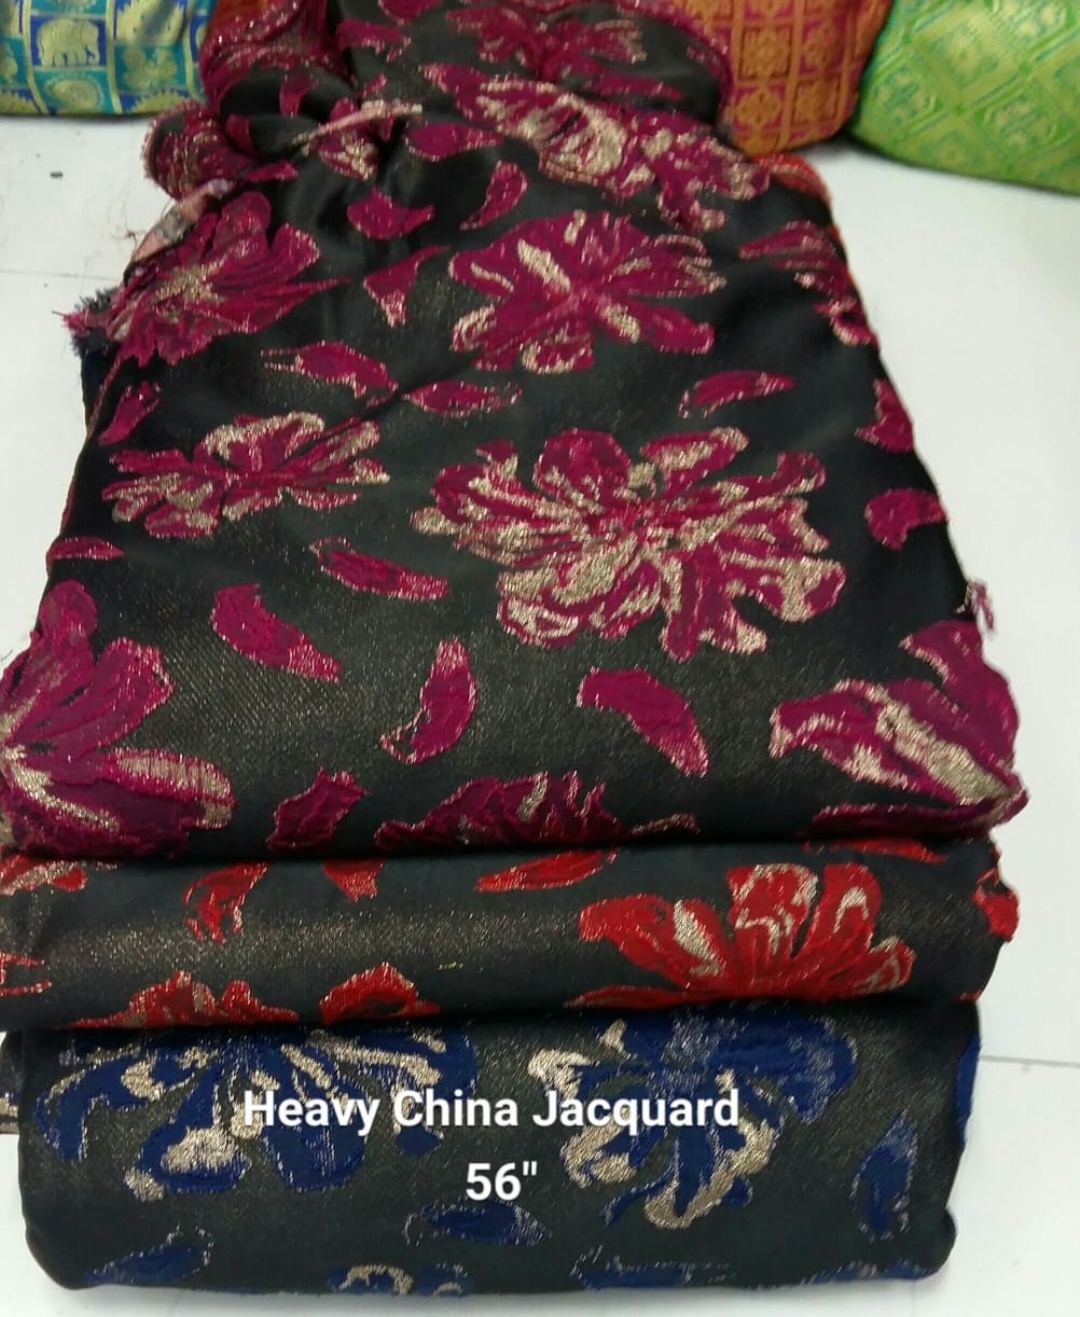 Heavy China Jacquard Fabric